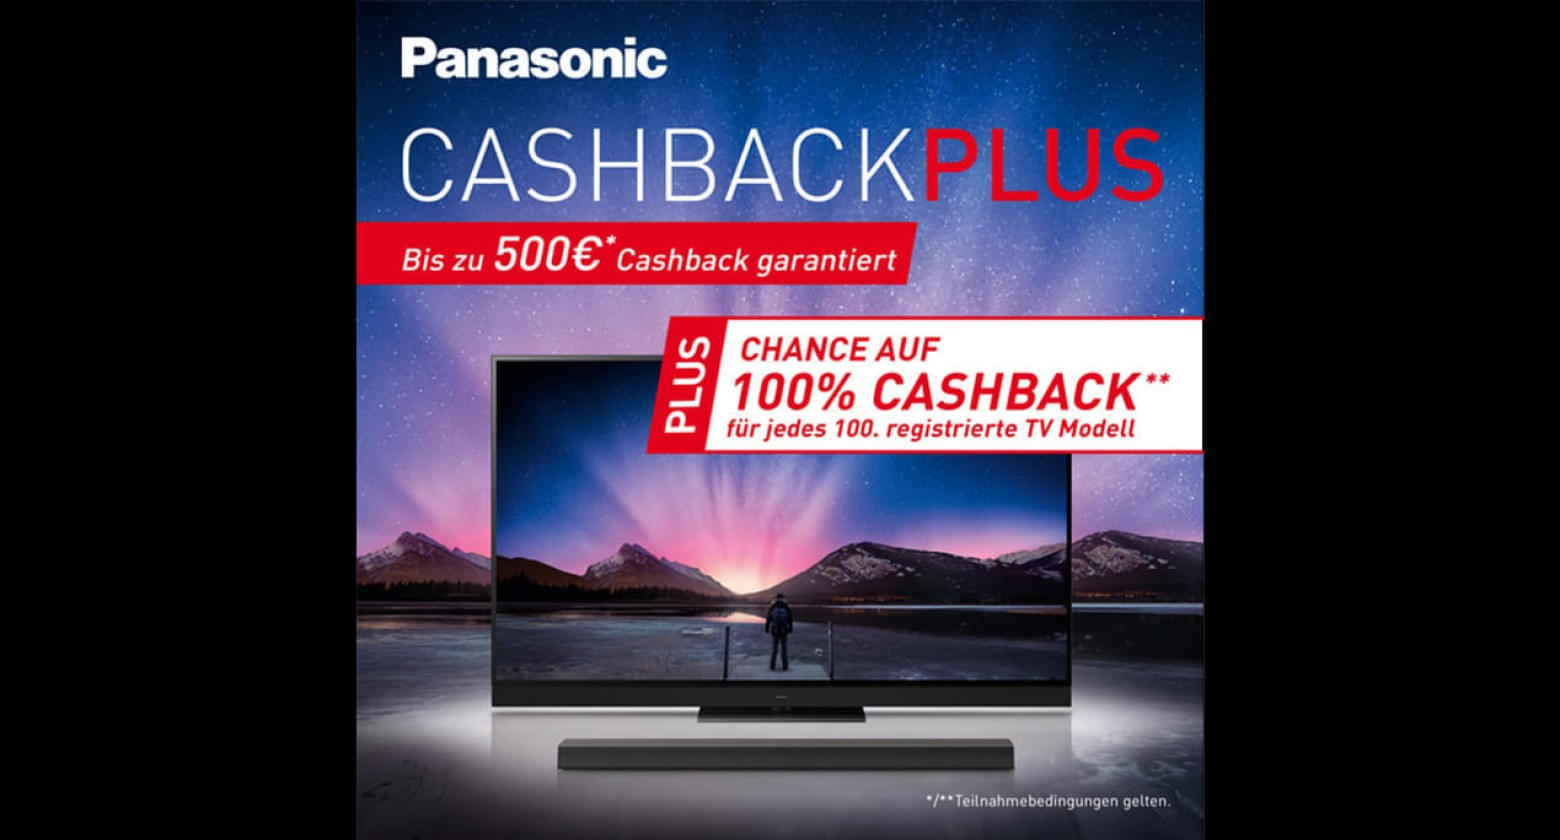 Panasonic-CashbackPLUS